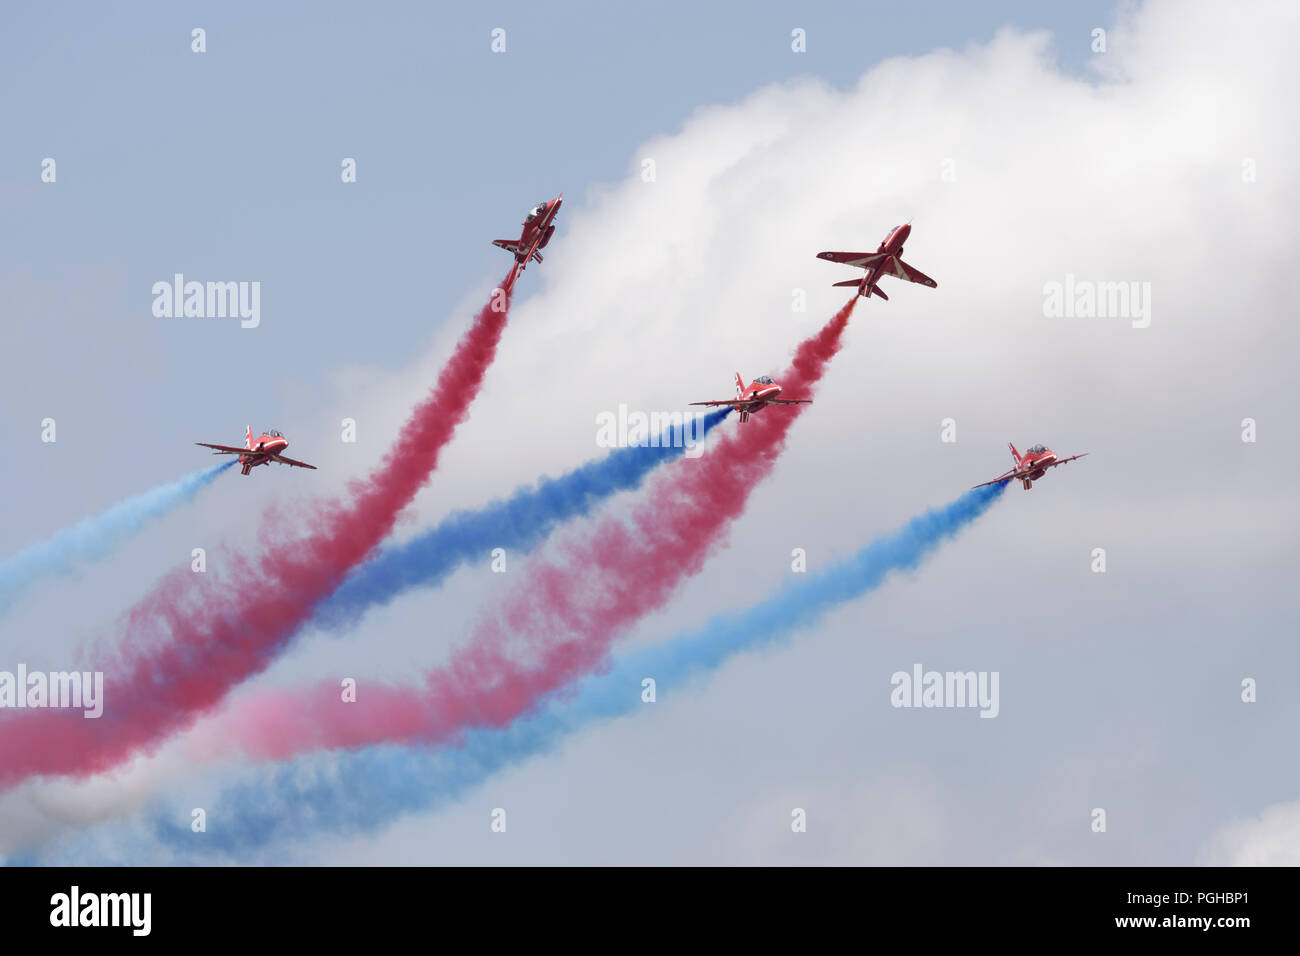 La Royal Air Force britannique des flèches rouges voltige militaire de l'équipe d'affichage de la section d'Enid 5 formateurs d'effectuer des restaurations Jet Hawk Au RIAT Banque D'Images